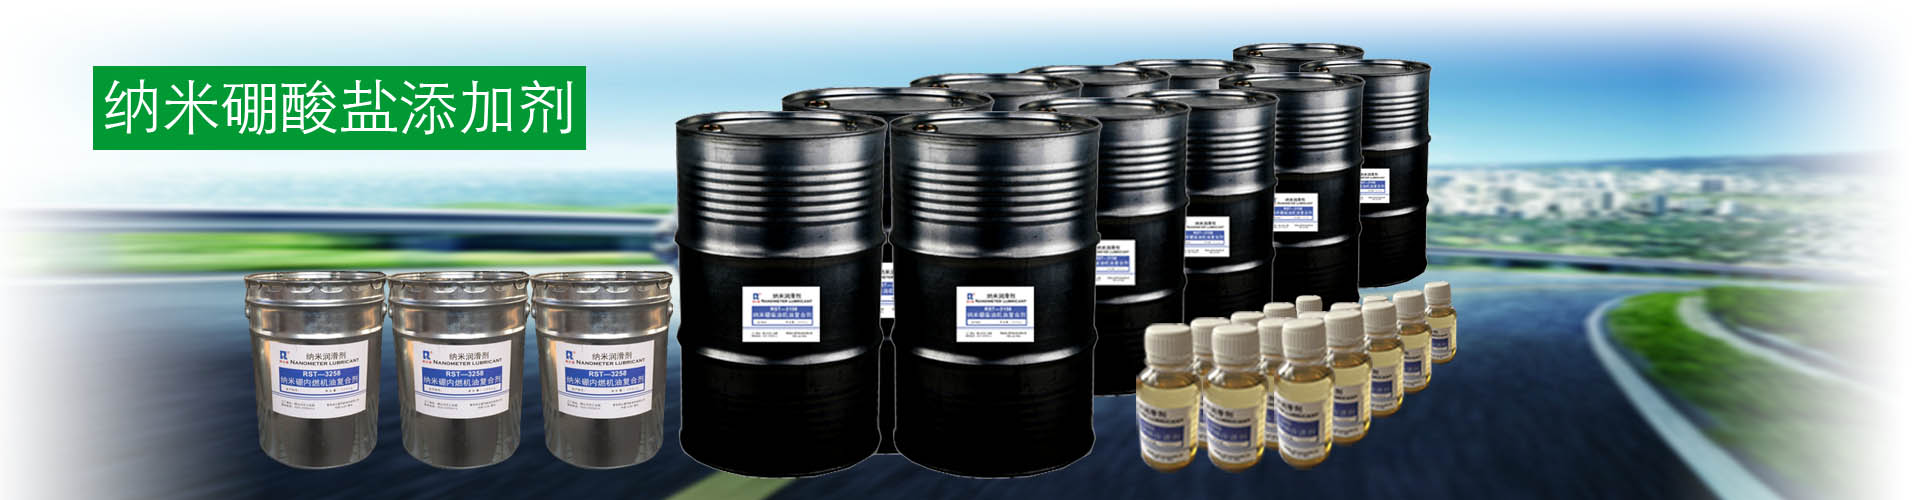 纳米硼汽柴通用机油复合剂3258纳米硼汽柴通用机油复合剂3258   内燃机油复合剂